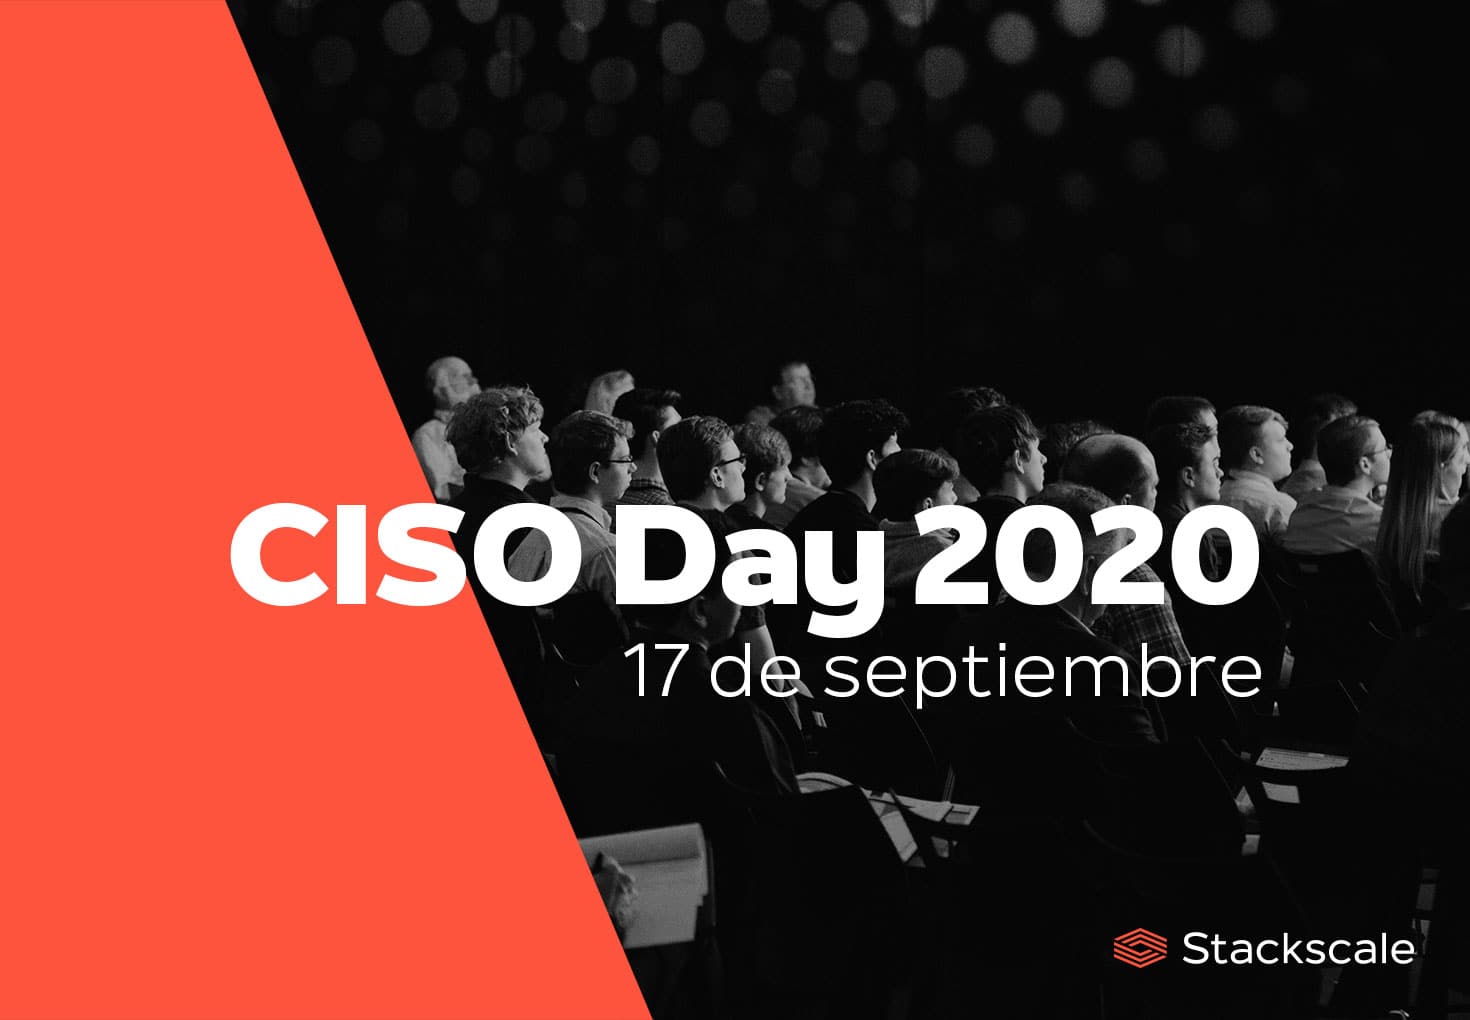 Stackscale patrocina el evento de ciberseguridad CISO Day 2020